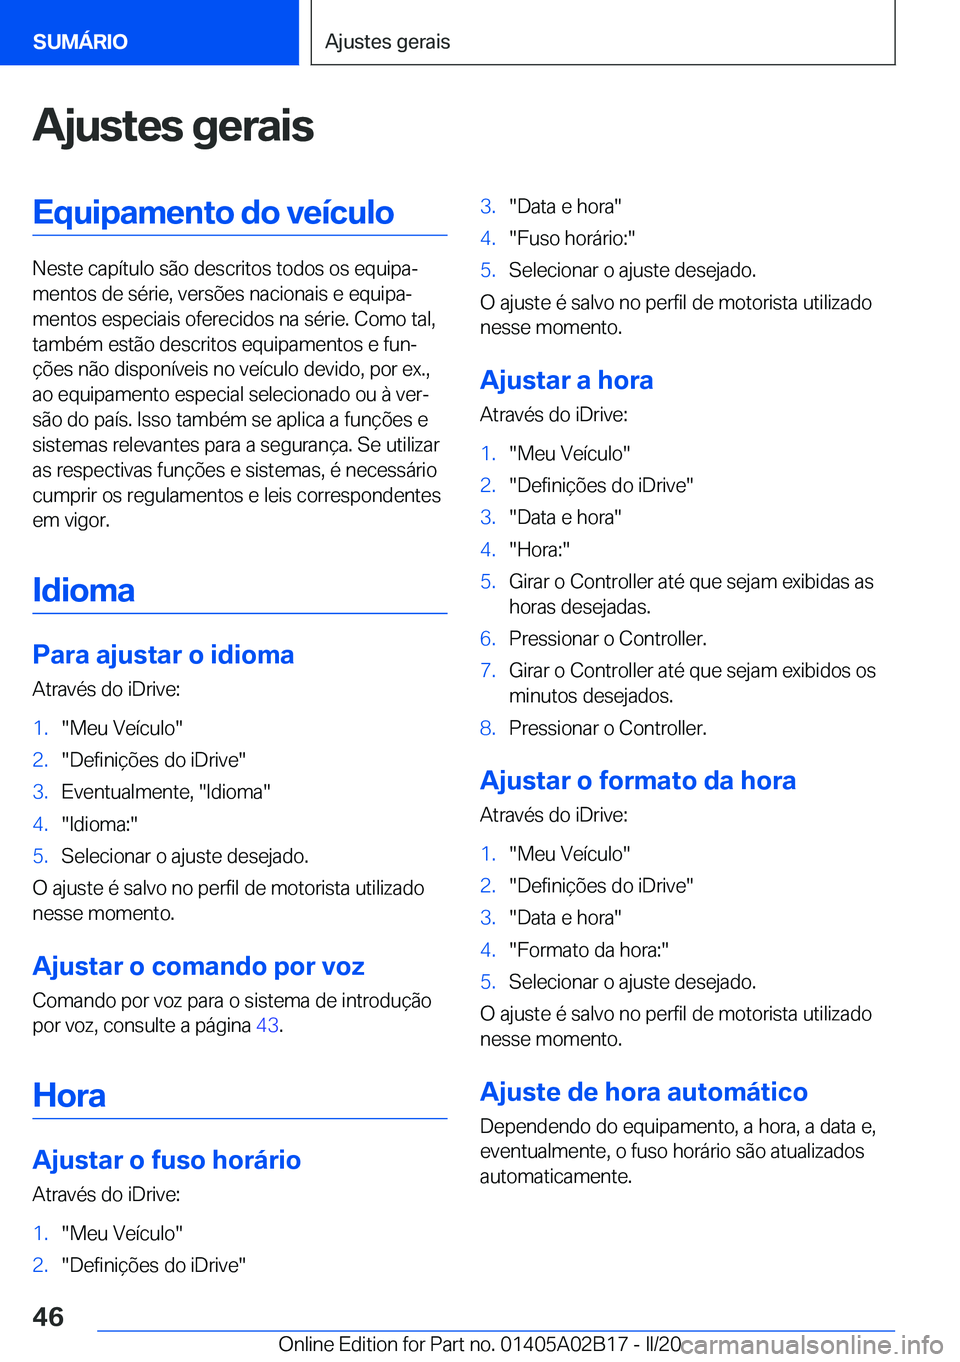 BMW X1 2020  Manual do condutor (in Portuguese) �A�j�u�s�t�e�s��g�e�r�a�i�s�E�q�u�i�p�a�m�e�n�t�o��d�o��v�e�